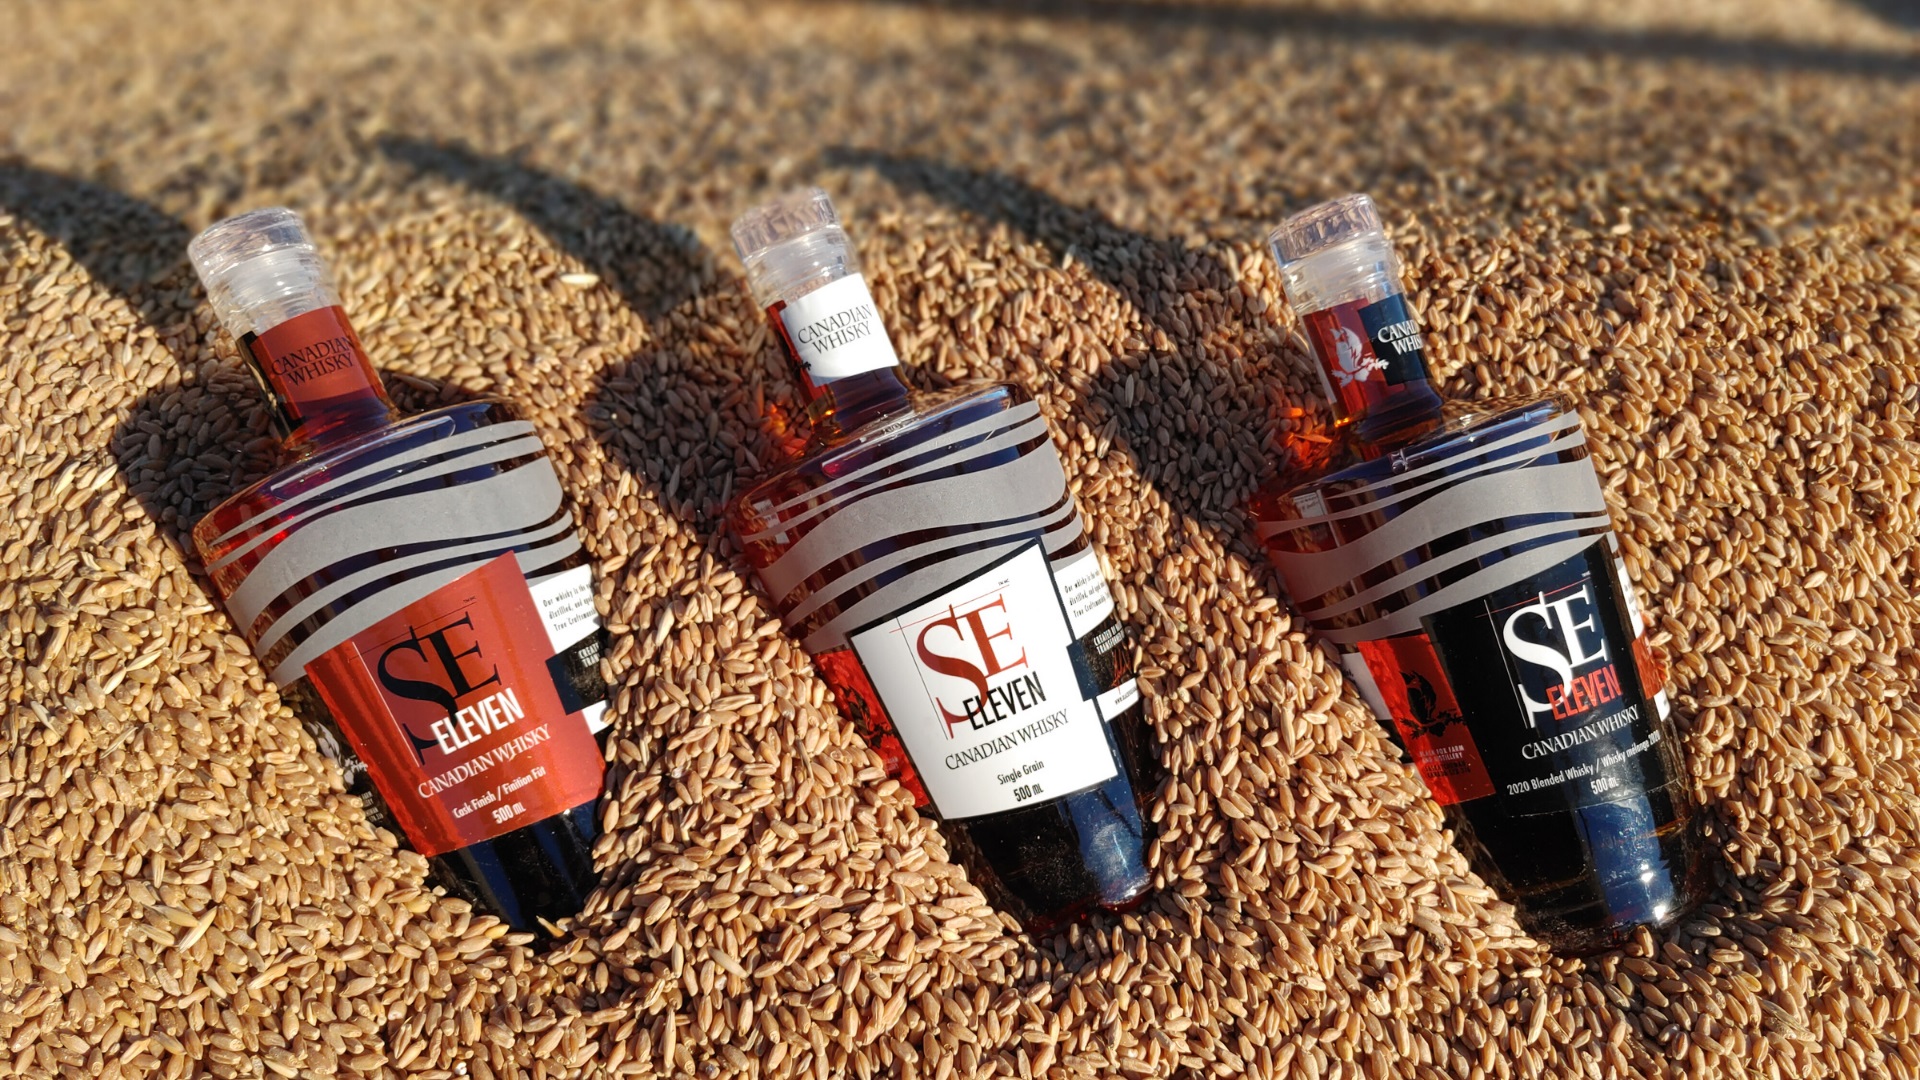 Saskatchewan: Black Fox Farm & Distillery glänzt mit neuem kanadischen SE Eleven Whisky